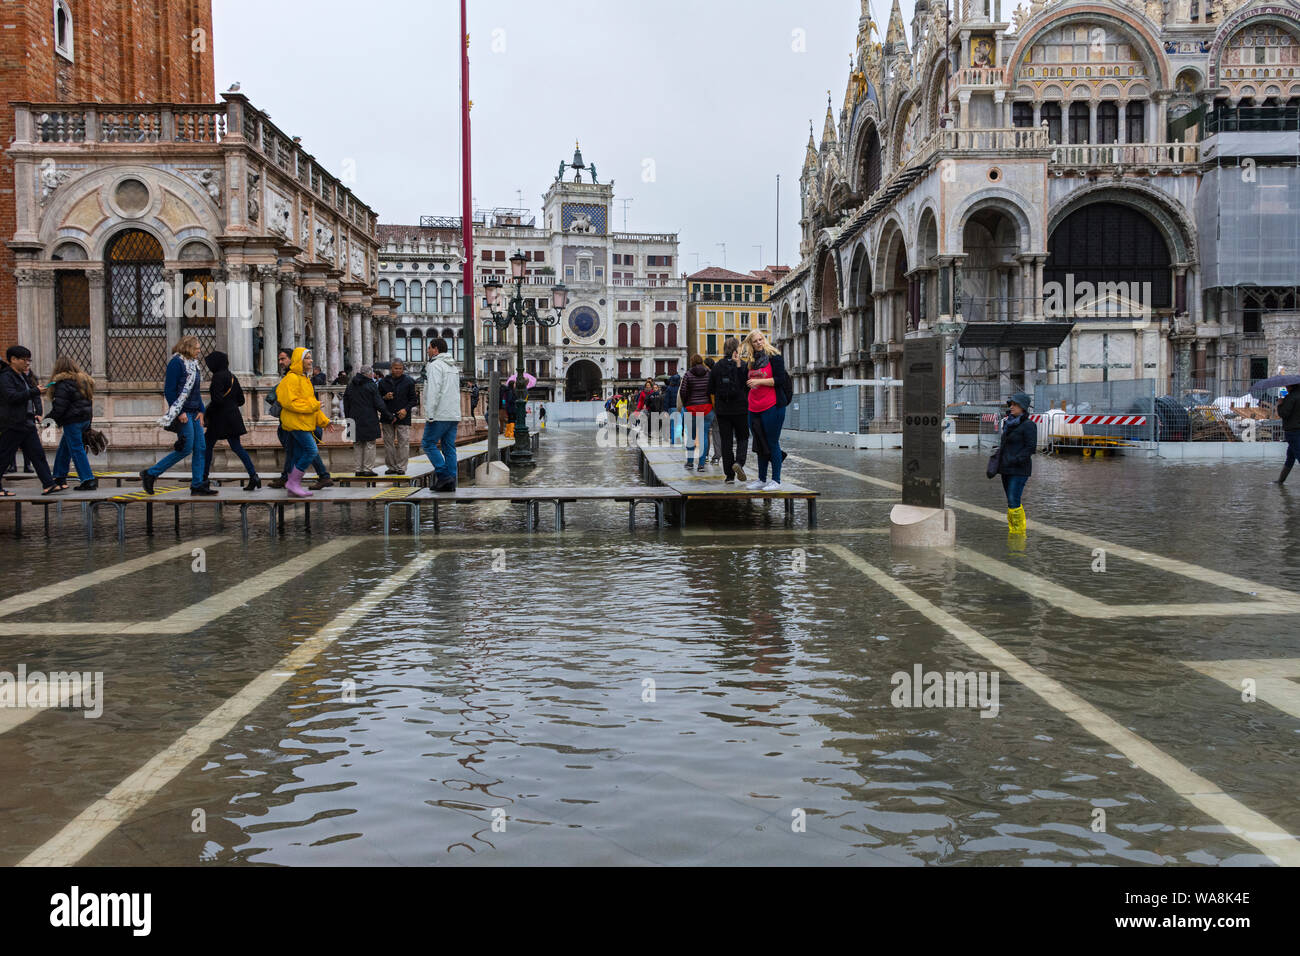 La gente camminare su piattaforme elevate durante un'acqua alta (l'acqua alta) evento, la Piazzetta di San Marco, Venezia, Italia Foto Stock